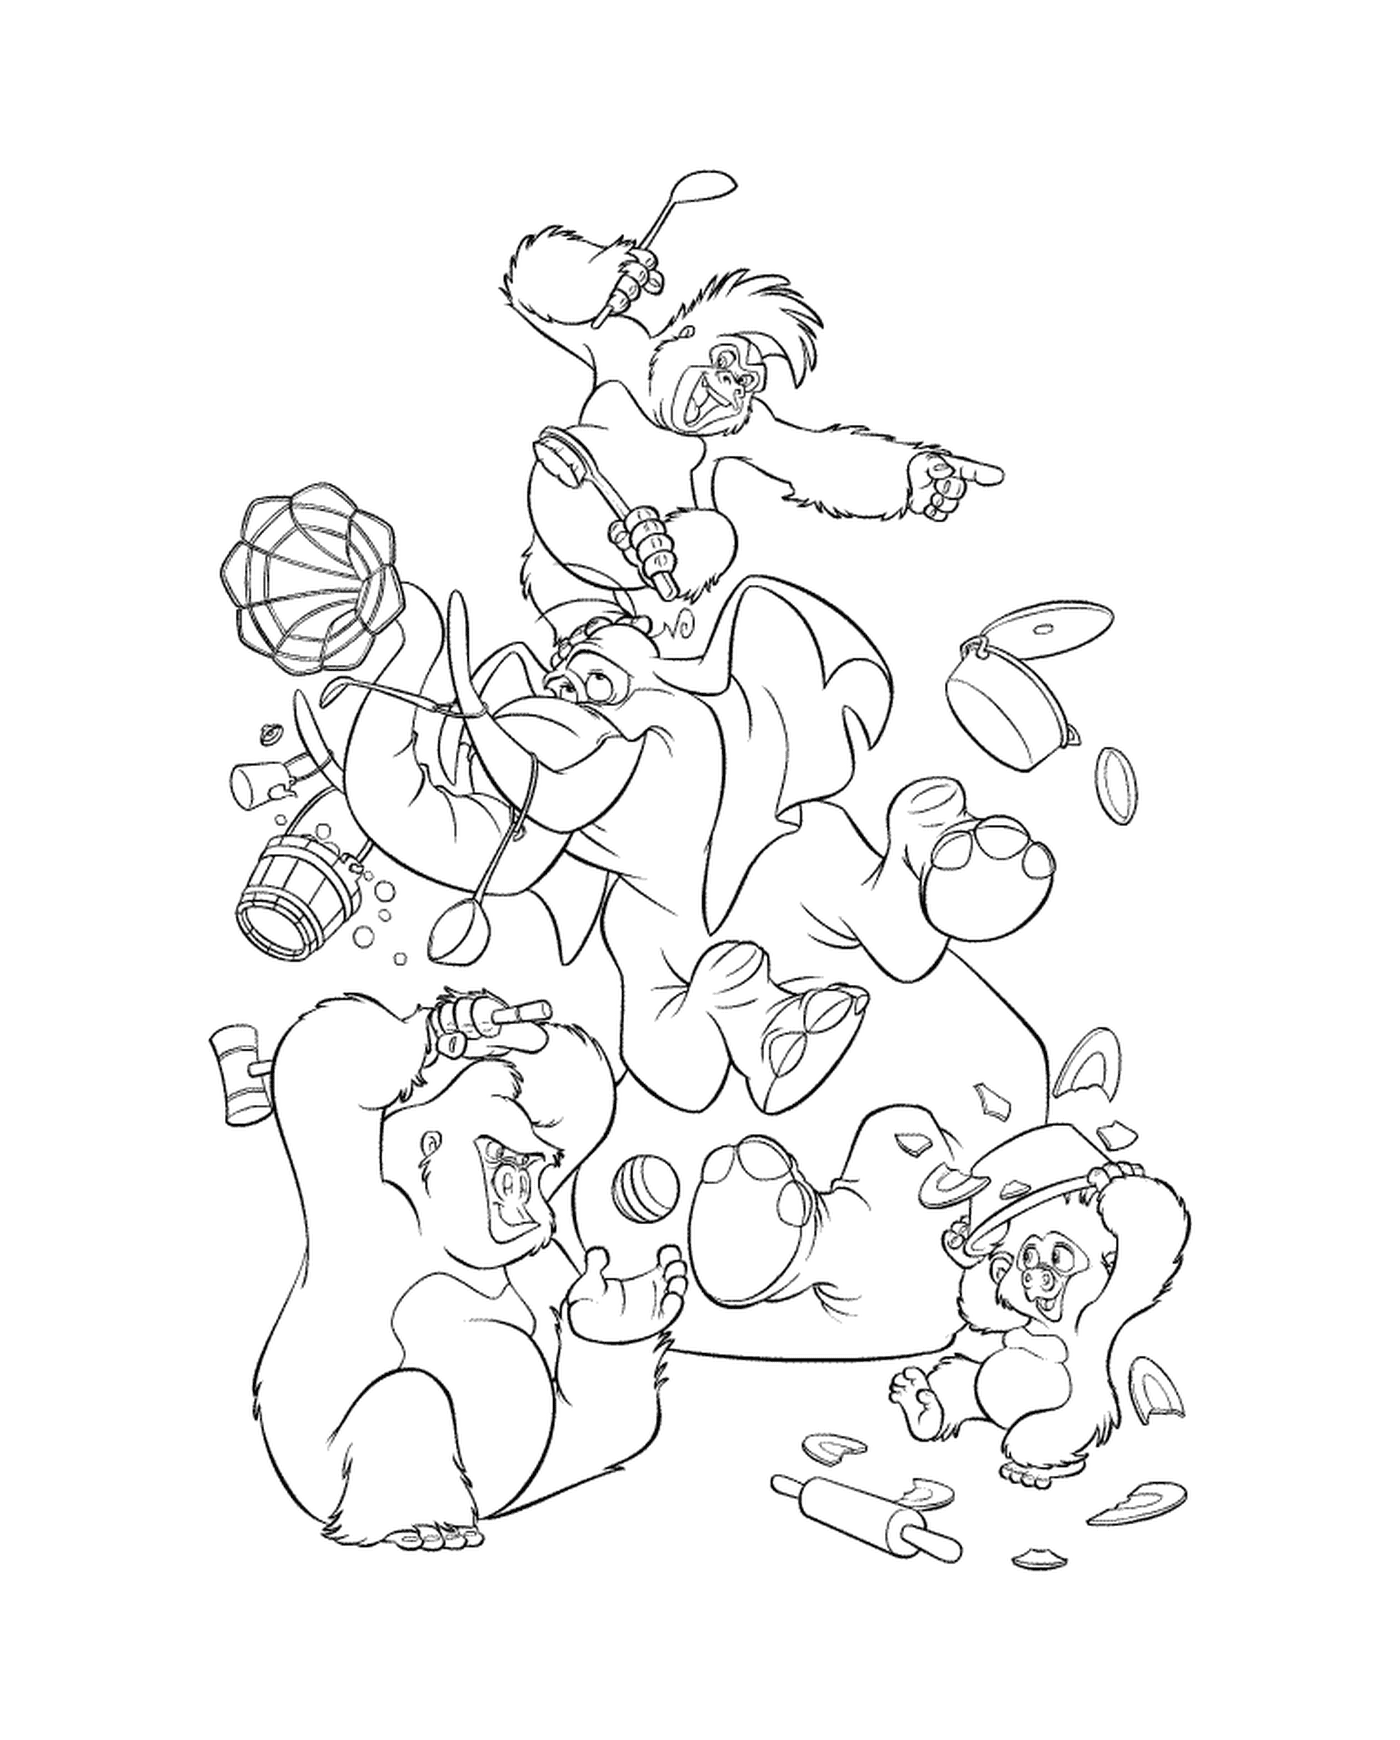  Группа медведей играет с фрисби 